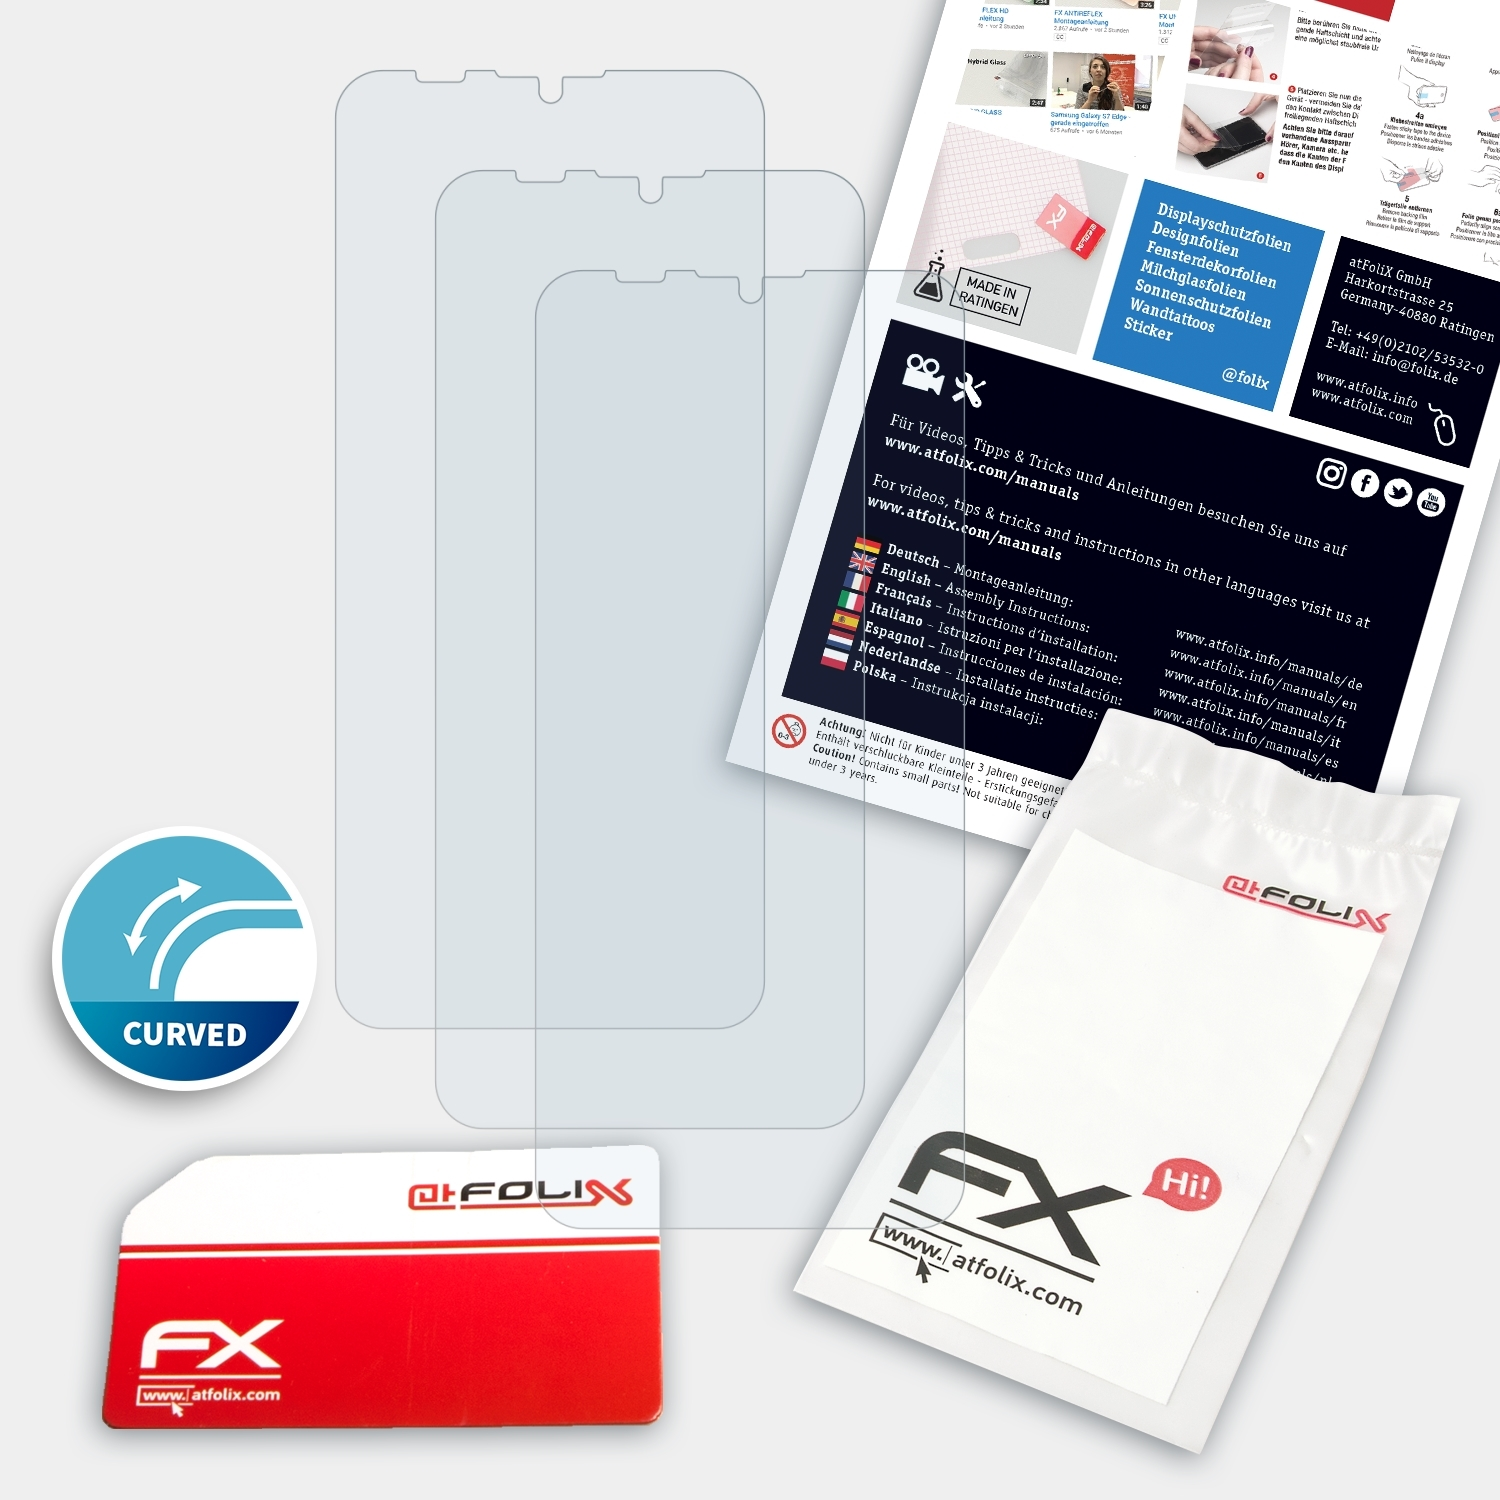 Ulefone Note ATFOLIX 9P) 3x Displayschutz(für FX-ActiFleX